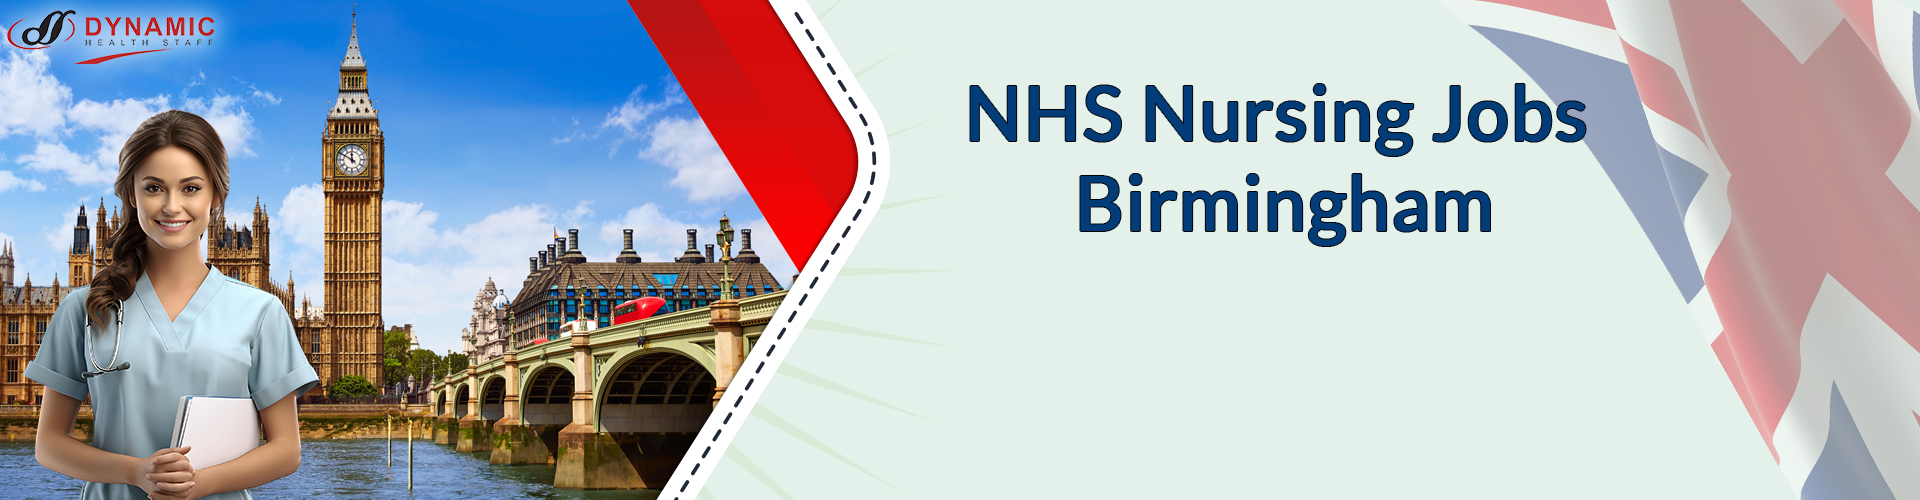 NHS Nursing Jobs Birmingham